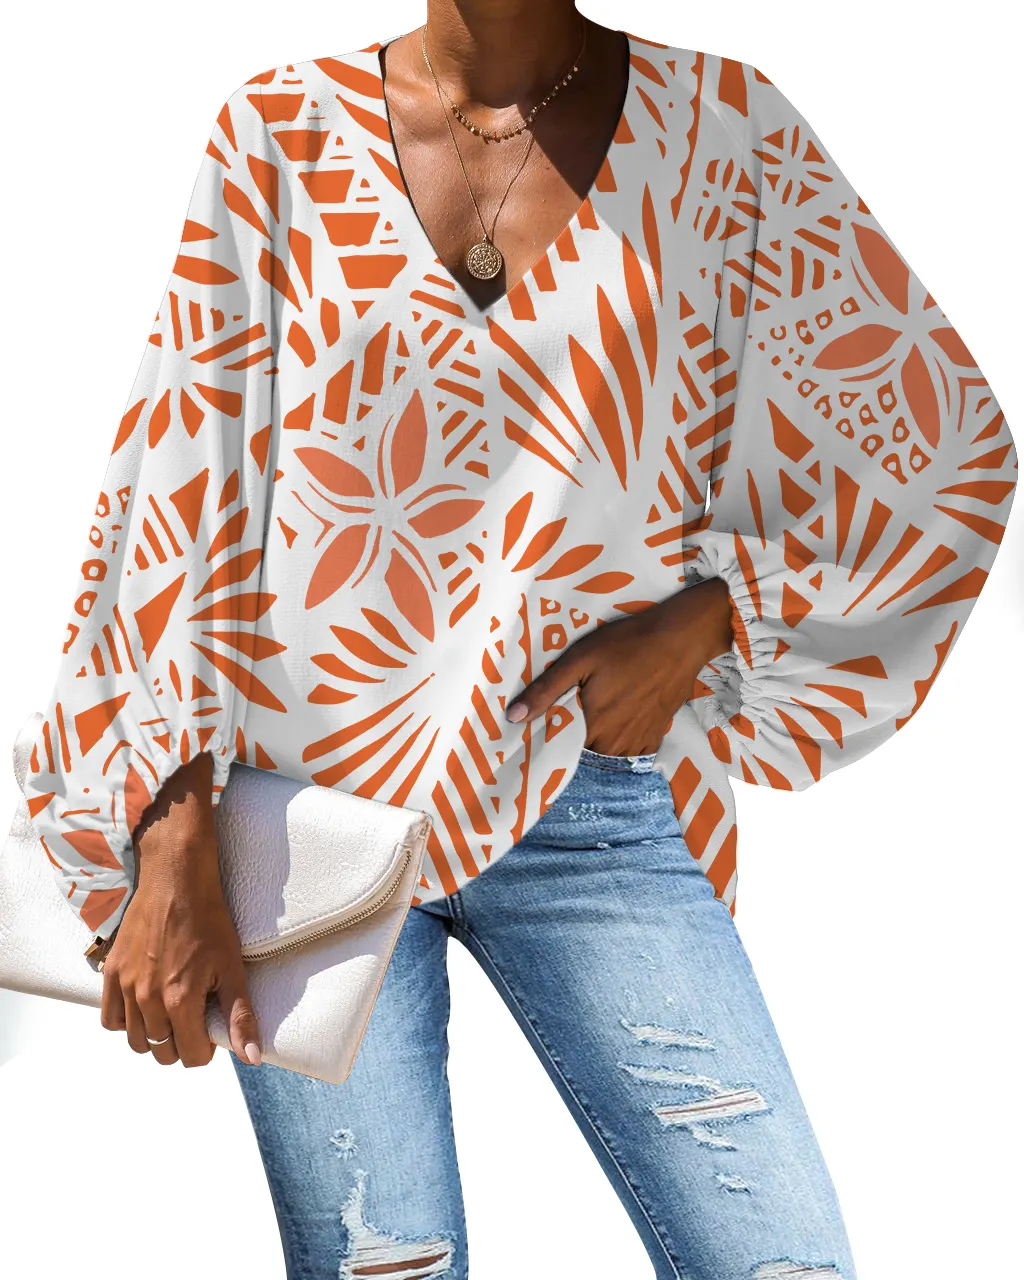 Blusa de gasa de manga larga con cuello en V para mujer, camisa elástica de manga larga con mangas abombadas en color blanco y naranja de alta calidad, diseño de tatuaje Tribal polinesiano